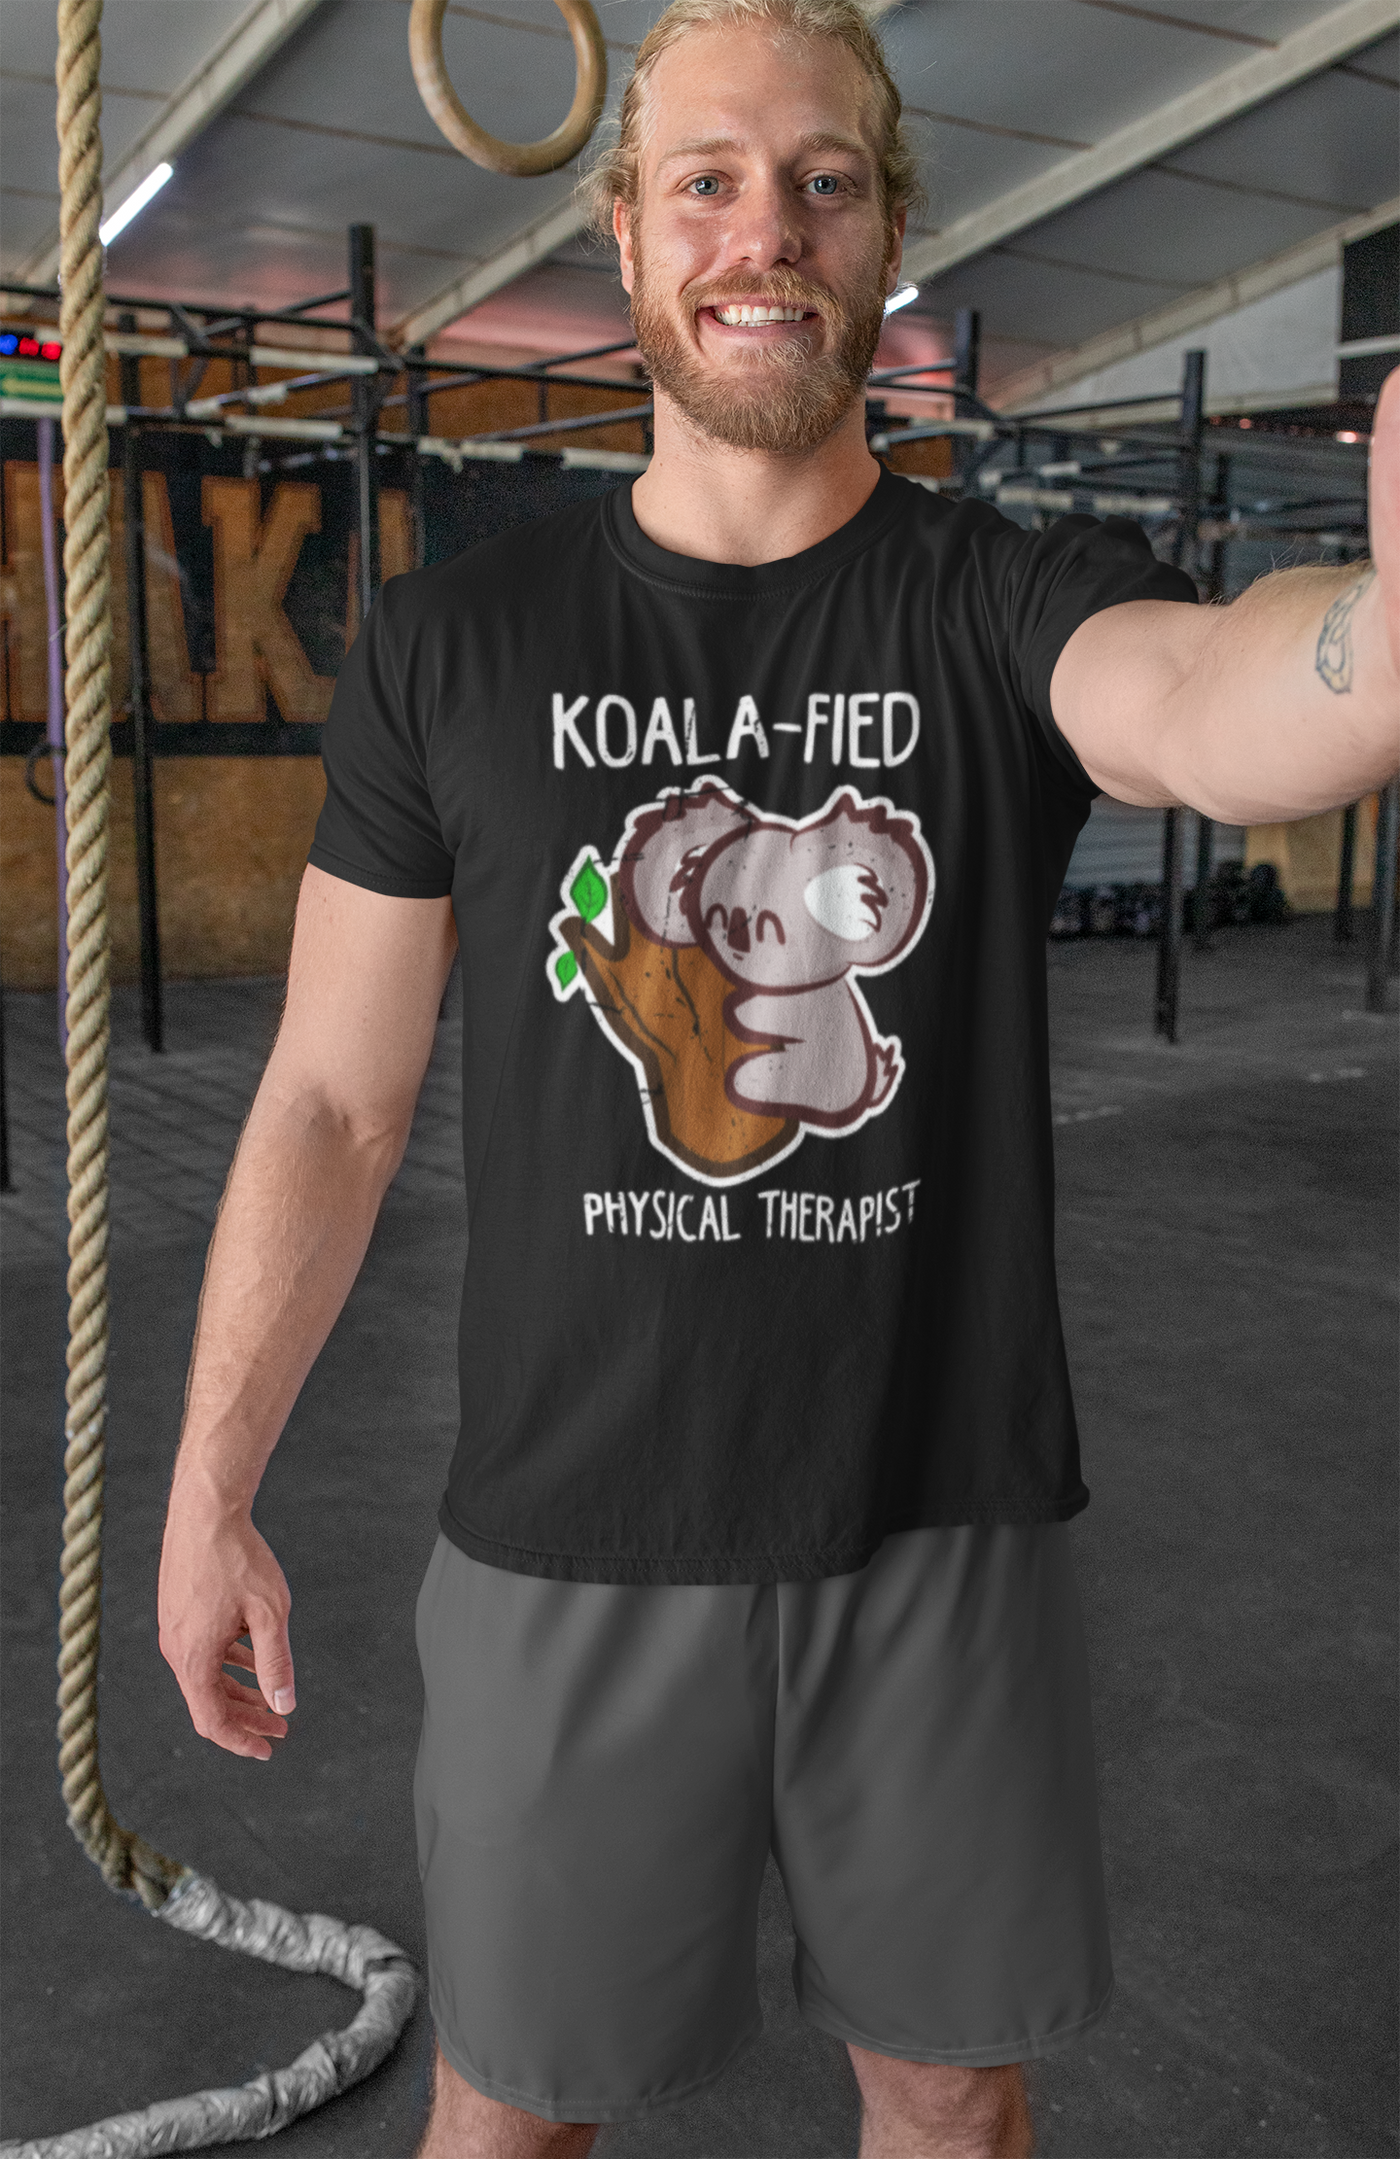 Koala-fied Physical Therapist